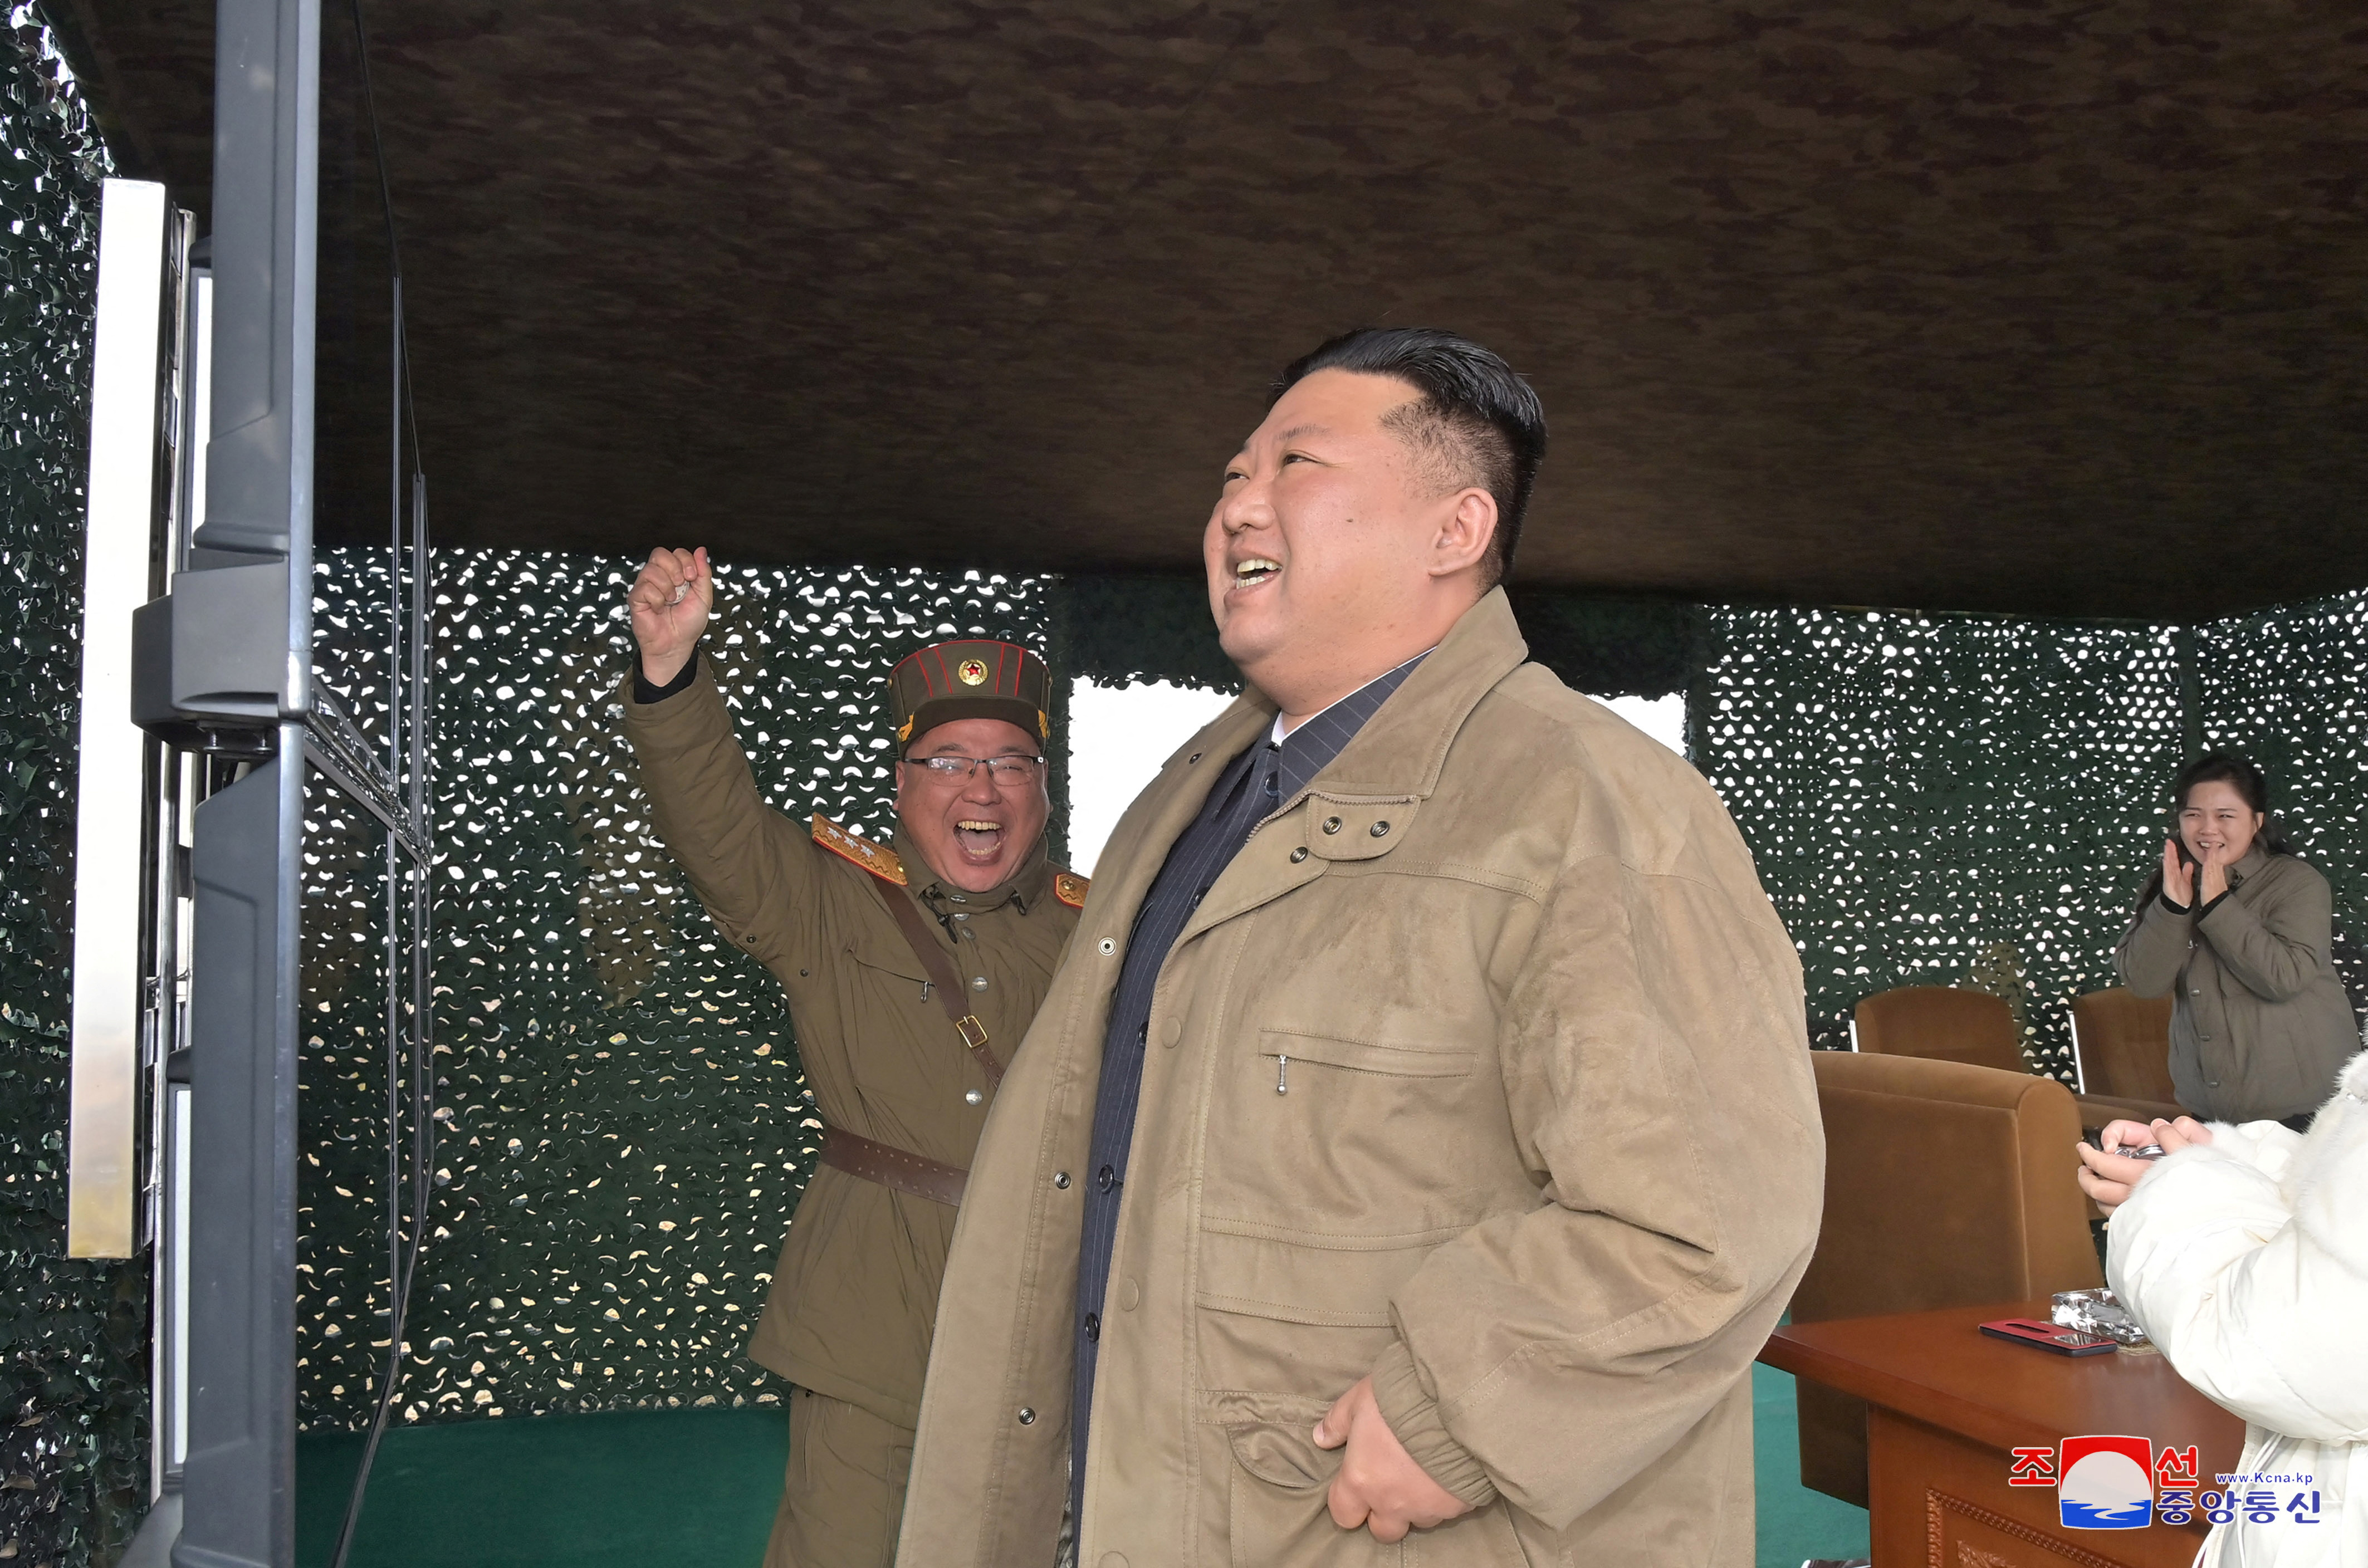 El líder norcoreano, Kim Jong Un, con su esposa Ri Sol Ju al fondo, reacciona el día del lanzamiento de un misil balístico intercontinental (KCNA via REUTERS)